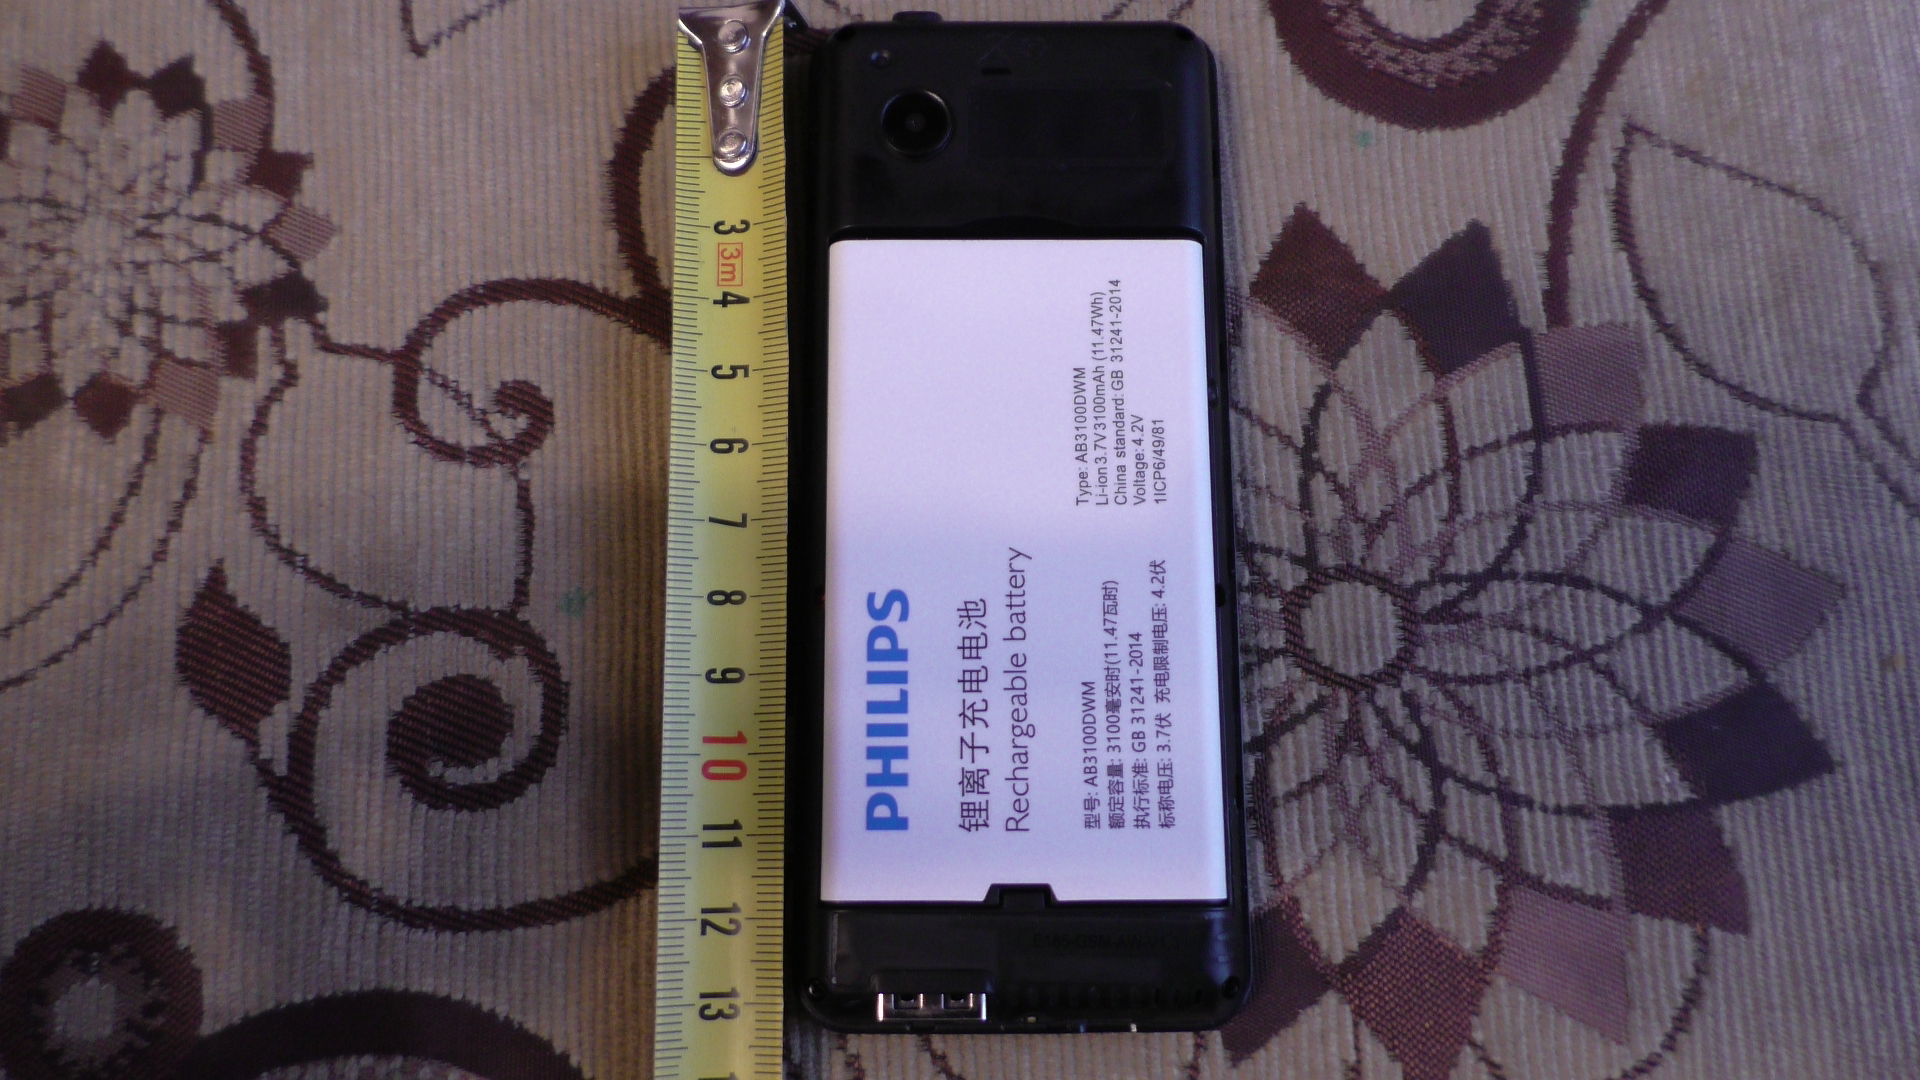 Xenium e185 black. Xenium e185. Телефон Philips e185 (Black). Телефон GSM Philips Xenium e185 Black 777180. Philips Xenium e185 razbor плата.